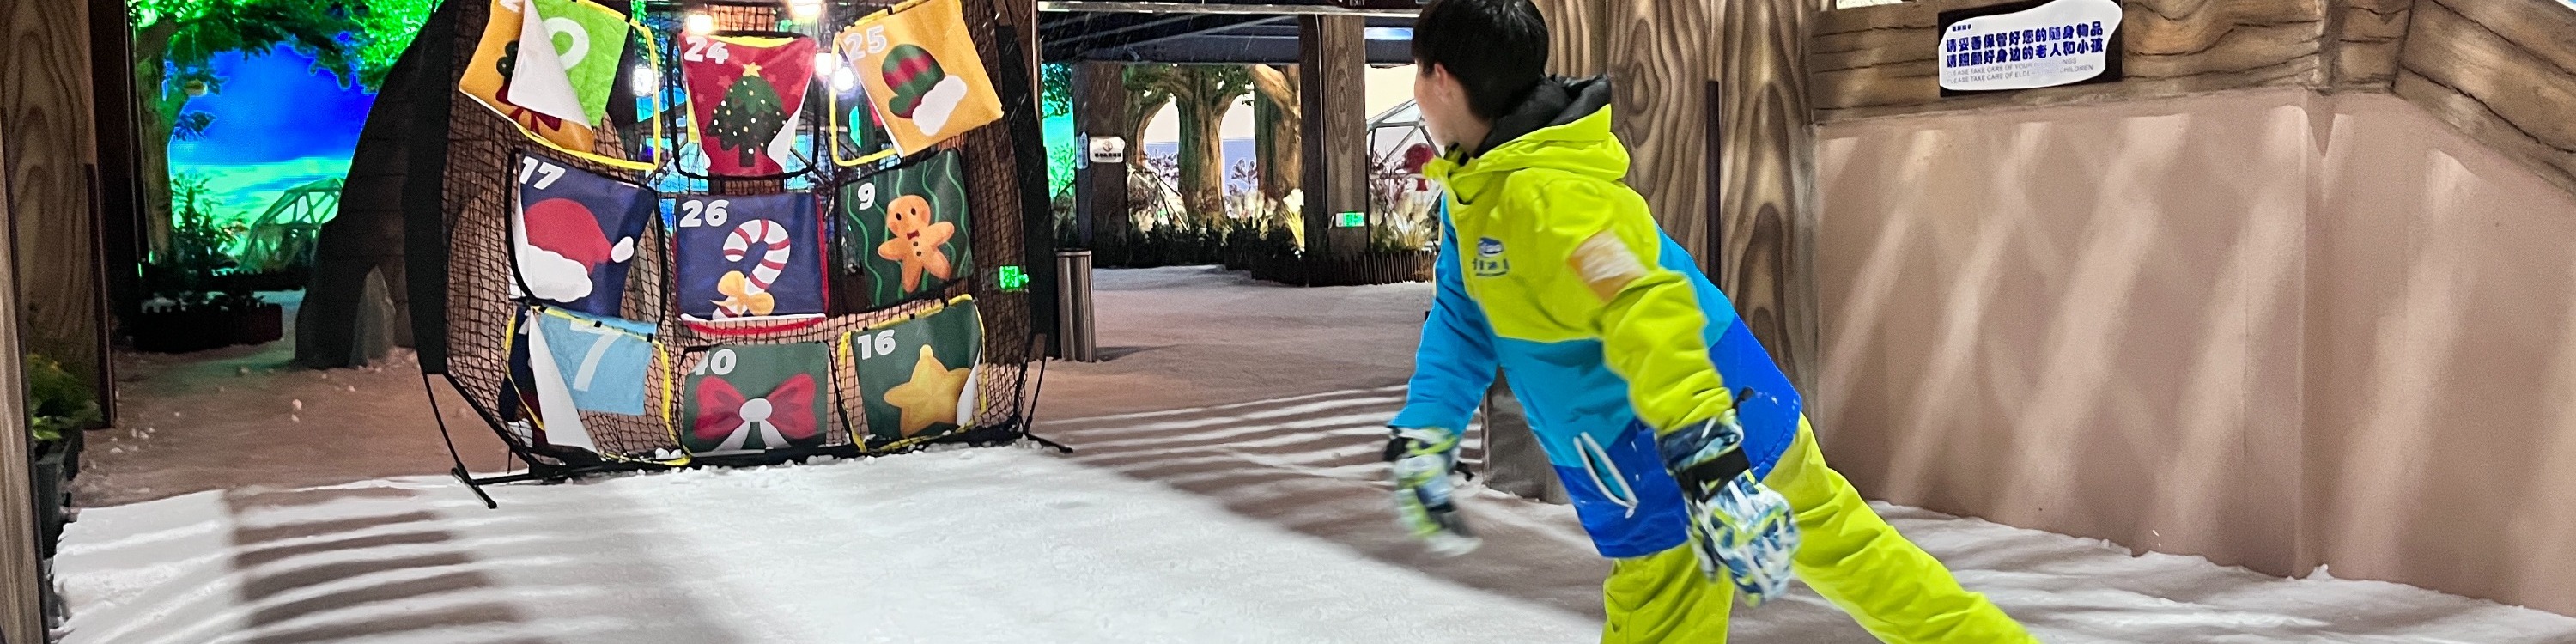 【深圳最大滑雪場】卡魯冰雪世界